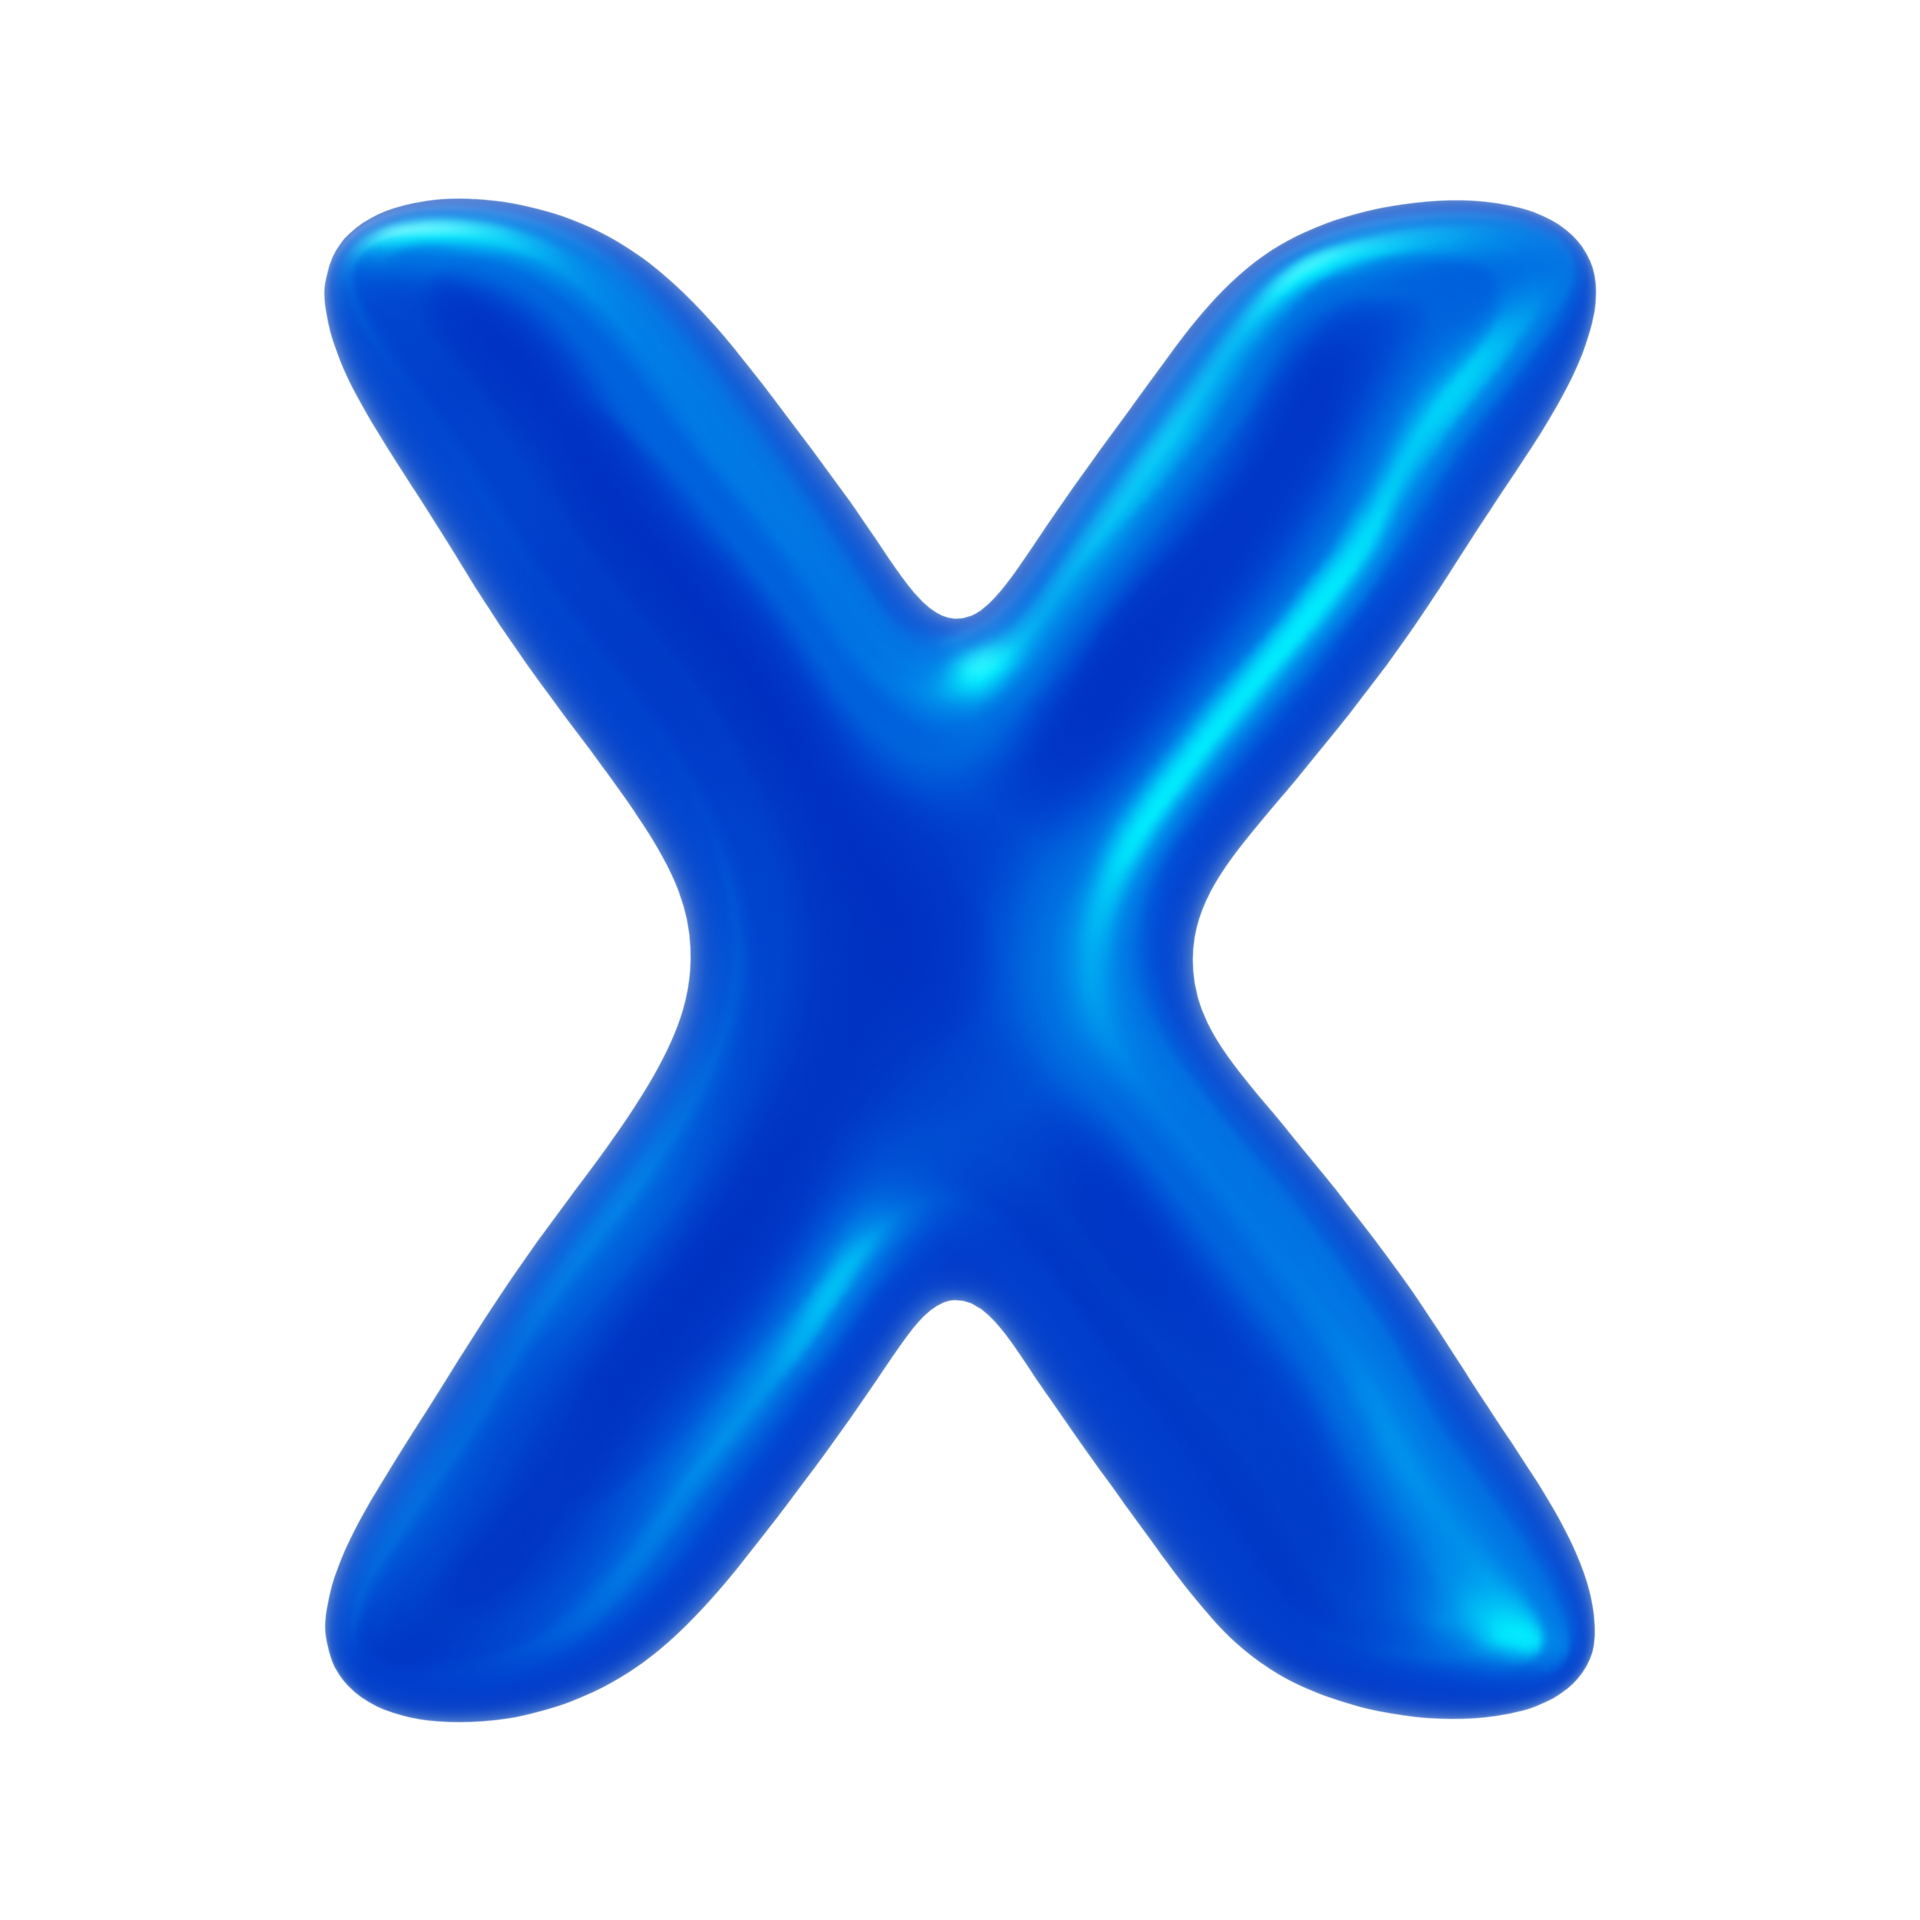 3d Alphabet Letter X With Blue Color 35750768 Png